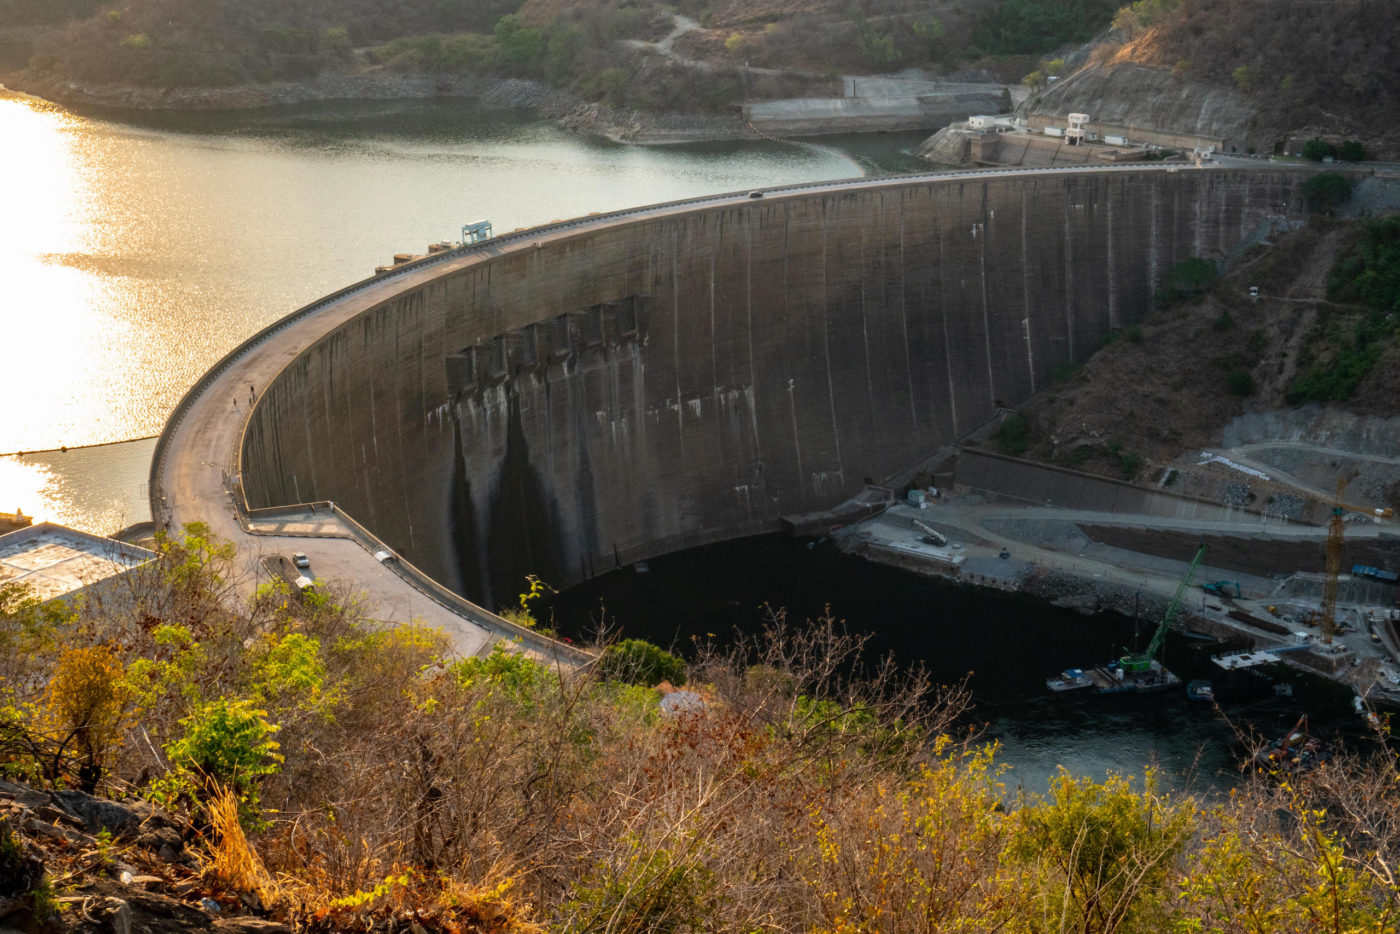 Zimbabwe trpělo vážným nedostatkem elektřiny v posledních suchých obdobích, protože nádrž za přehradou Kariba byla snížena suchem a odpařováním